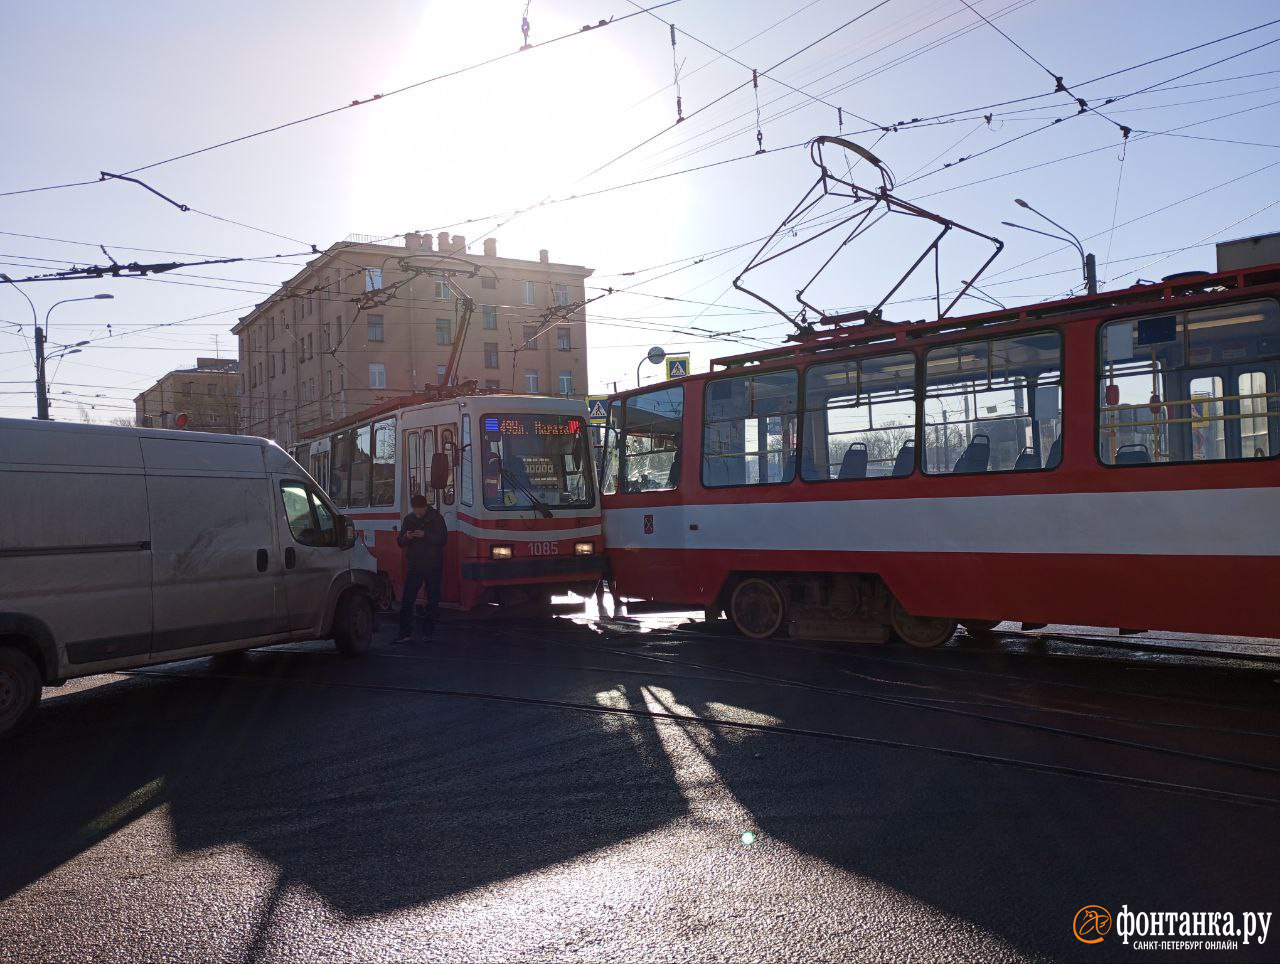 Два трамвая не разъехались на углу Расстанной и Камчатской. Движение встало